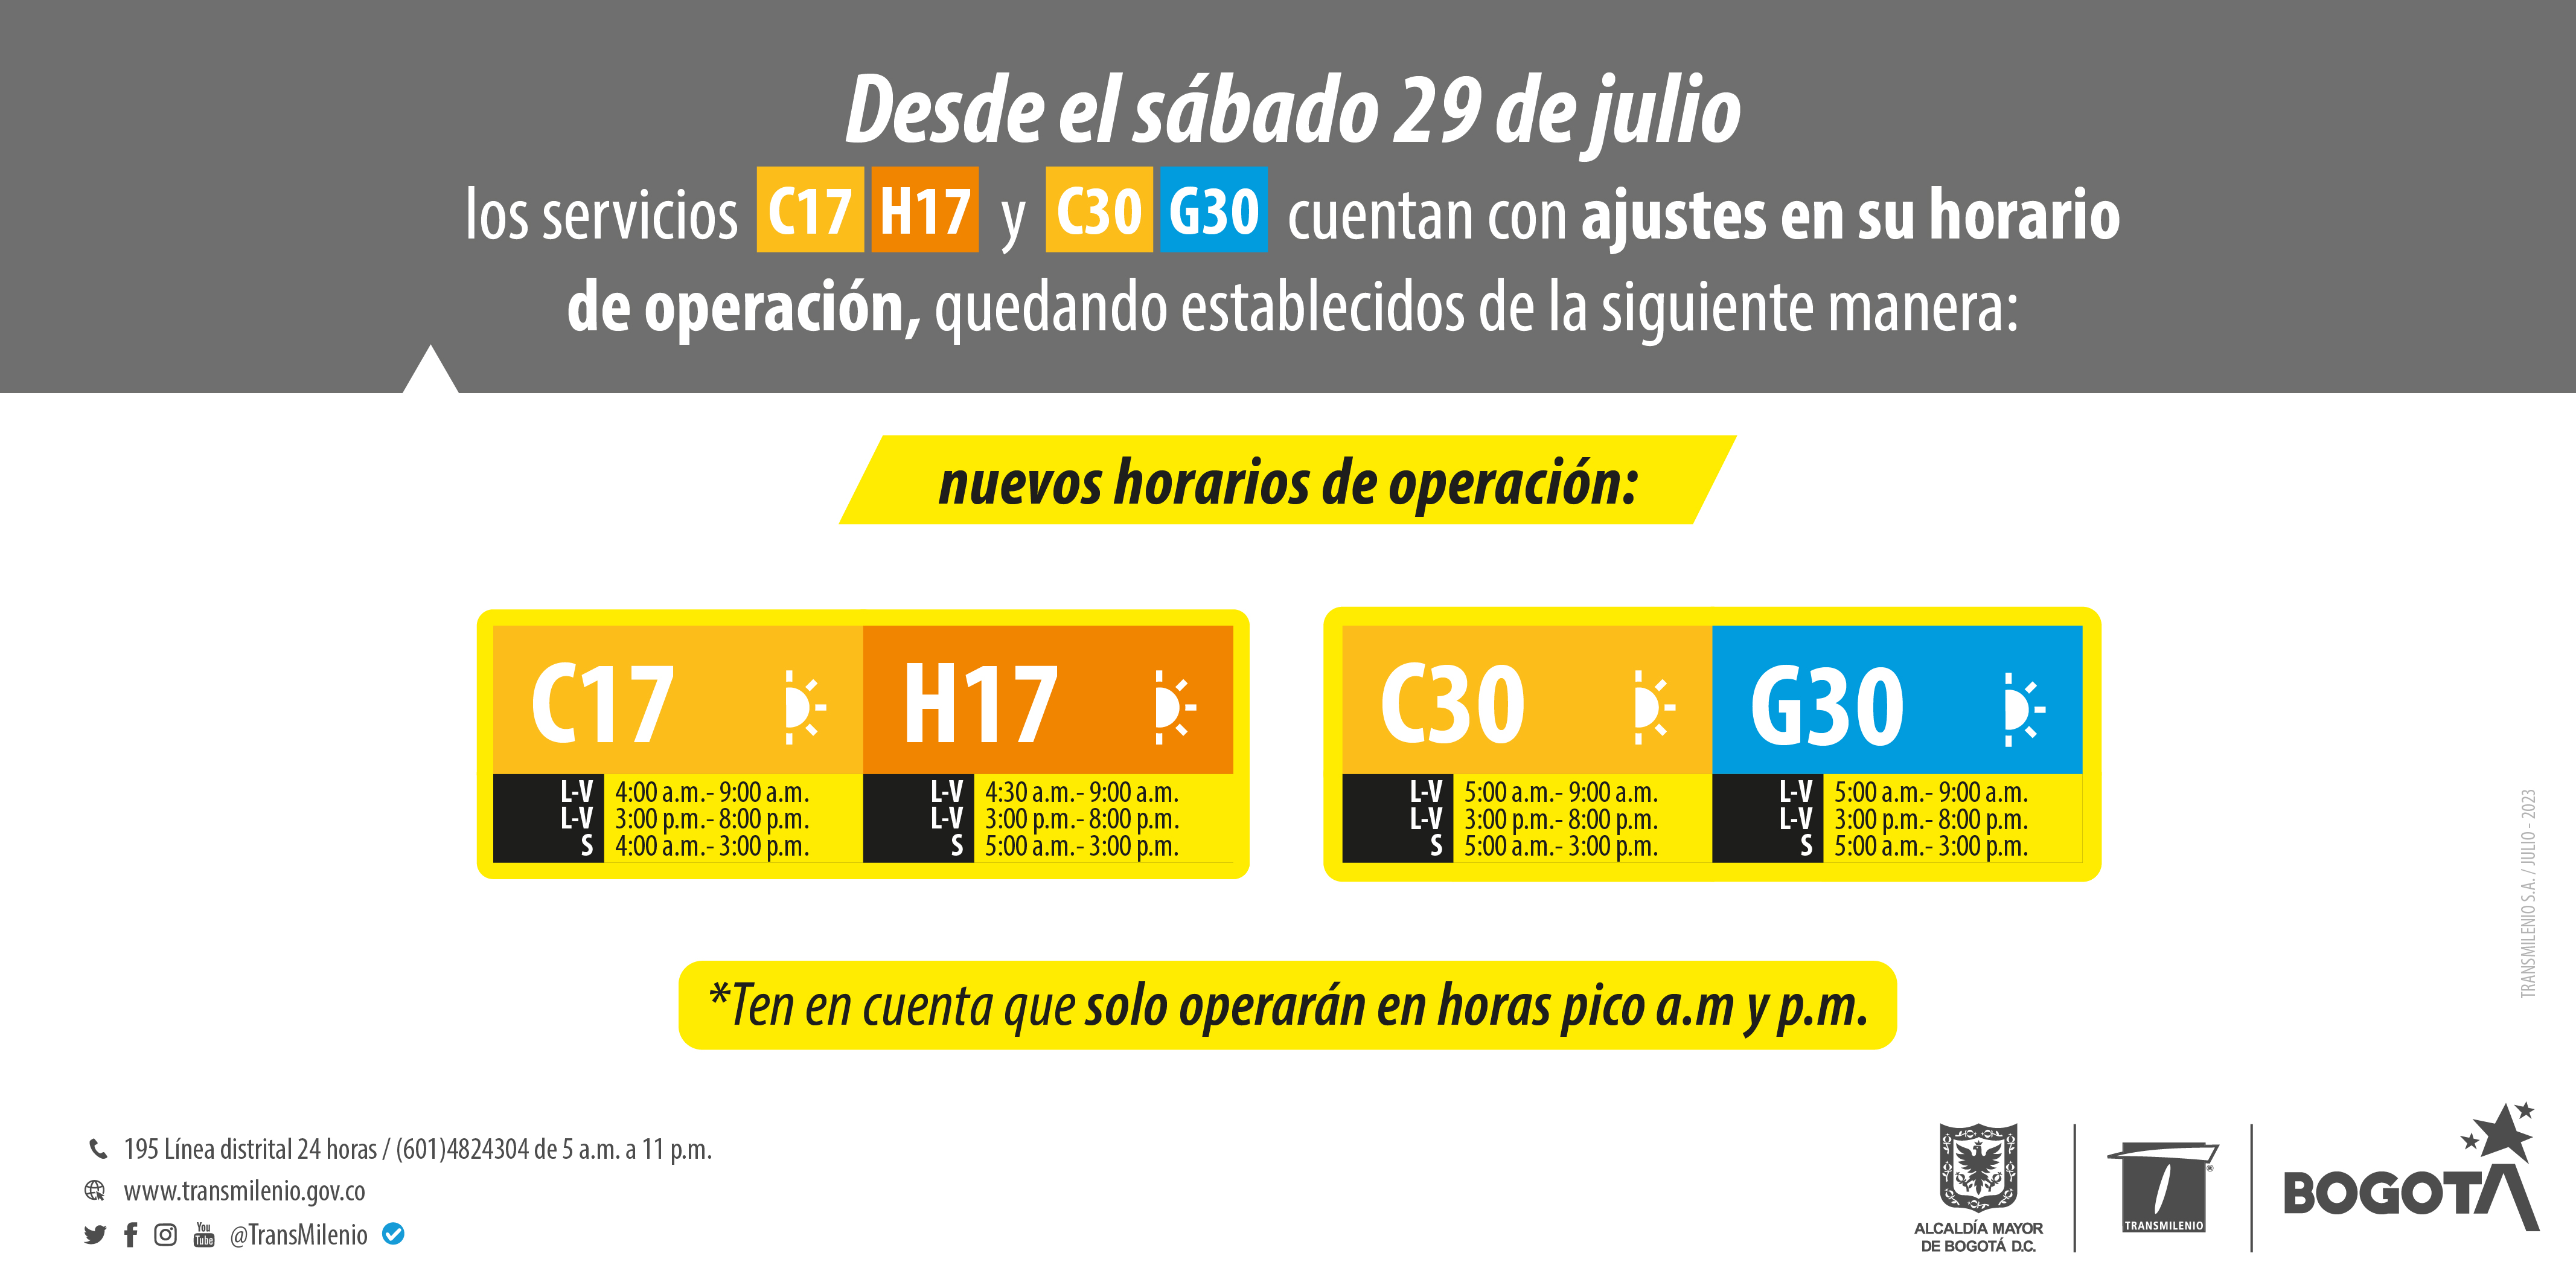 Cuáles son los horarios de operación de las rutas C17, H17, C30 y G30